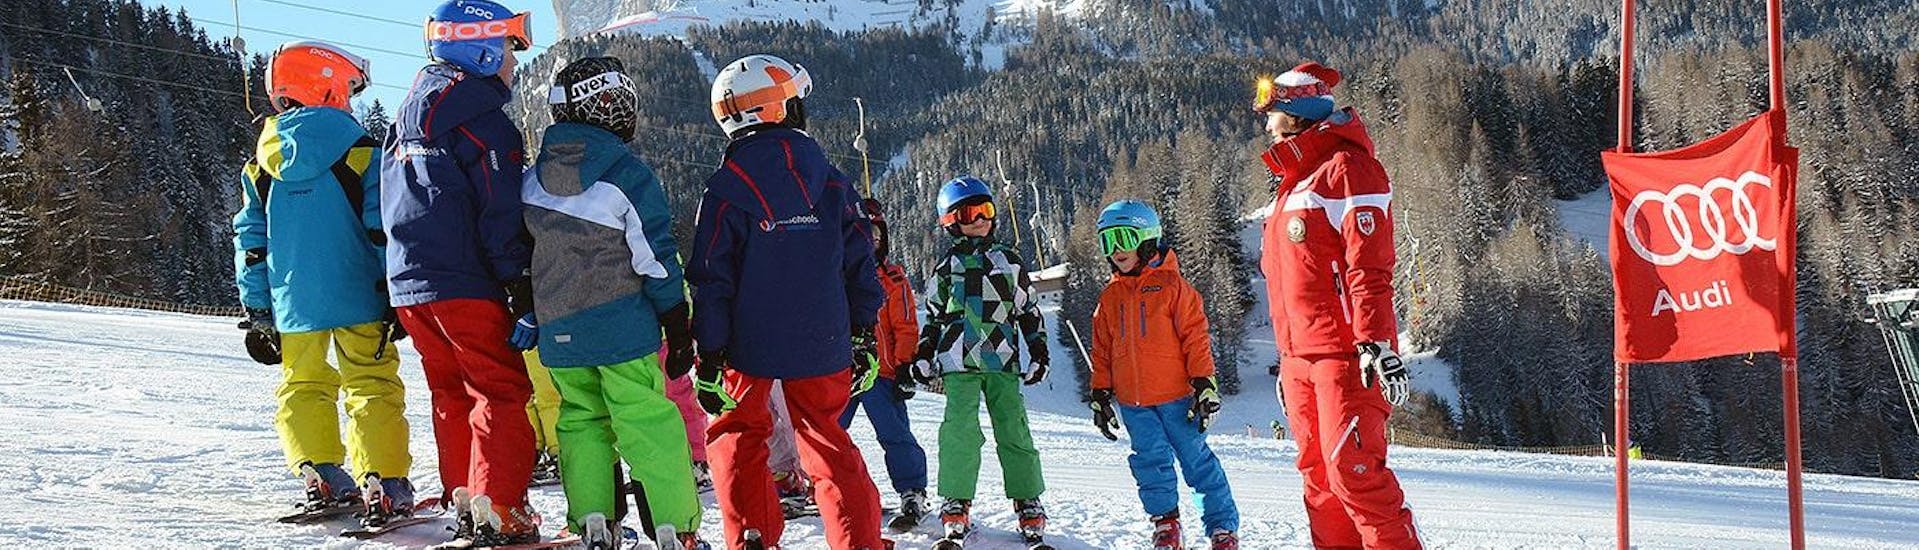 Clases de esquí para niños a partir de 10 años para avanzados.